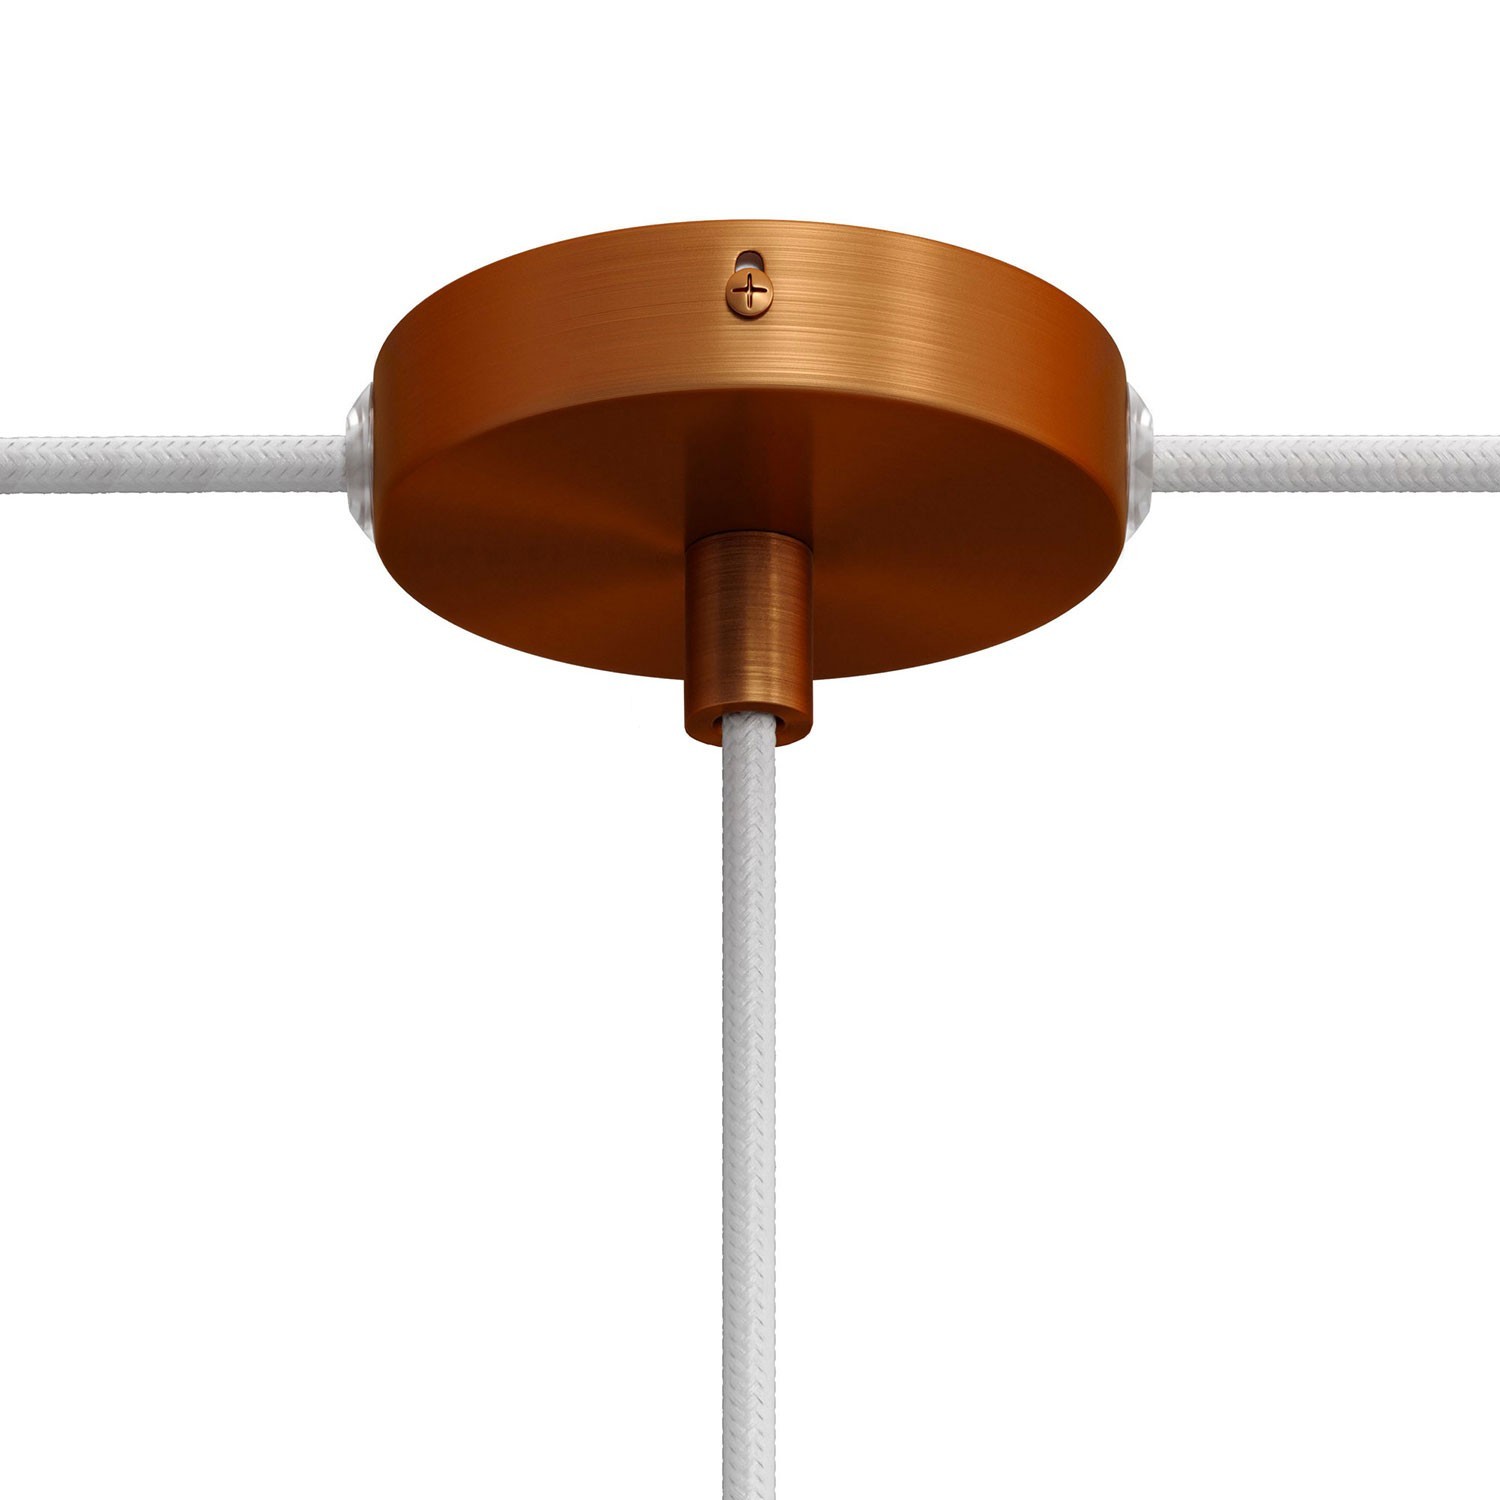 Kit Mini metalen cilindervormige plafondkap met 1 centraal gat en 2 zijdelingse gaten